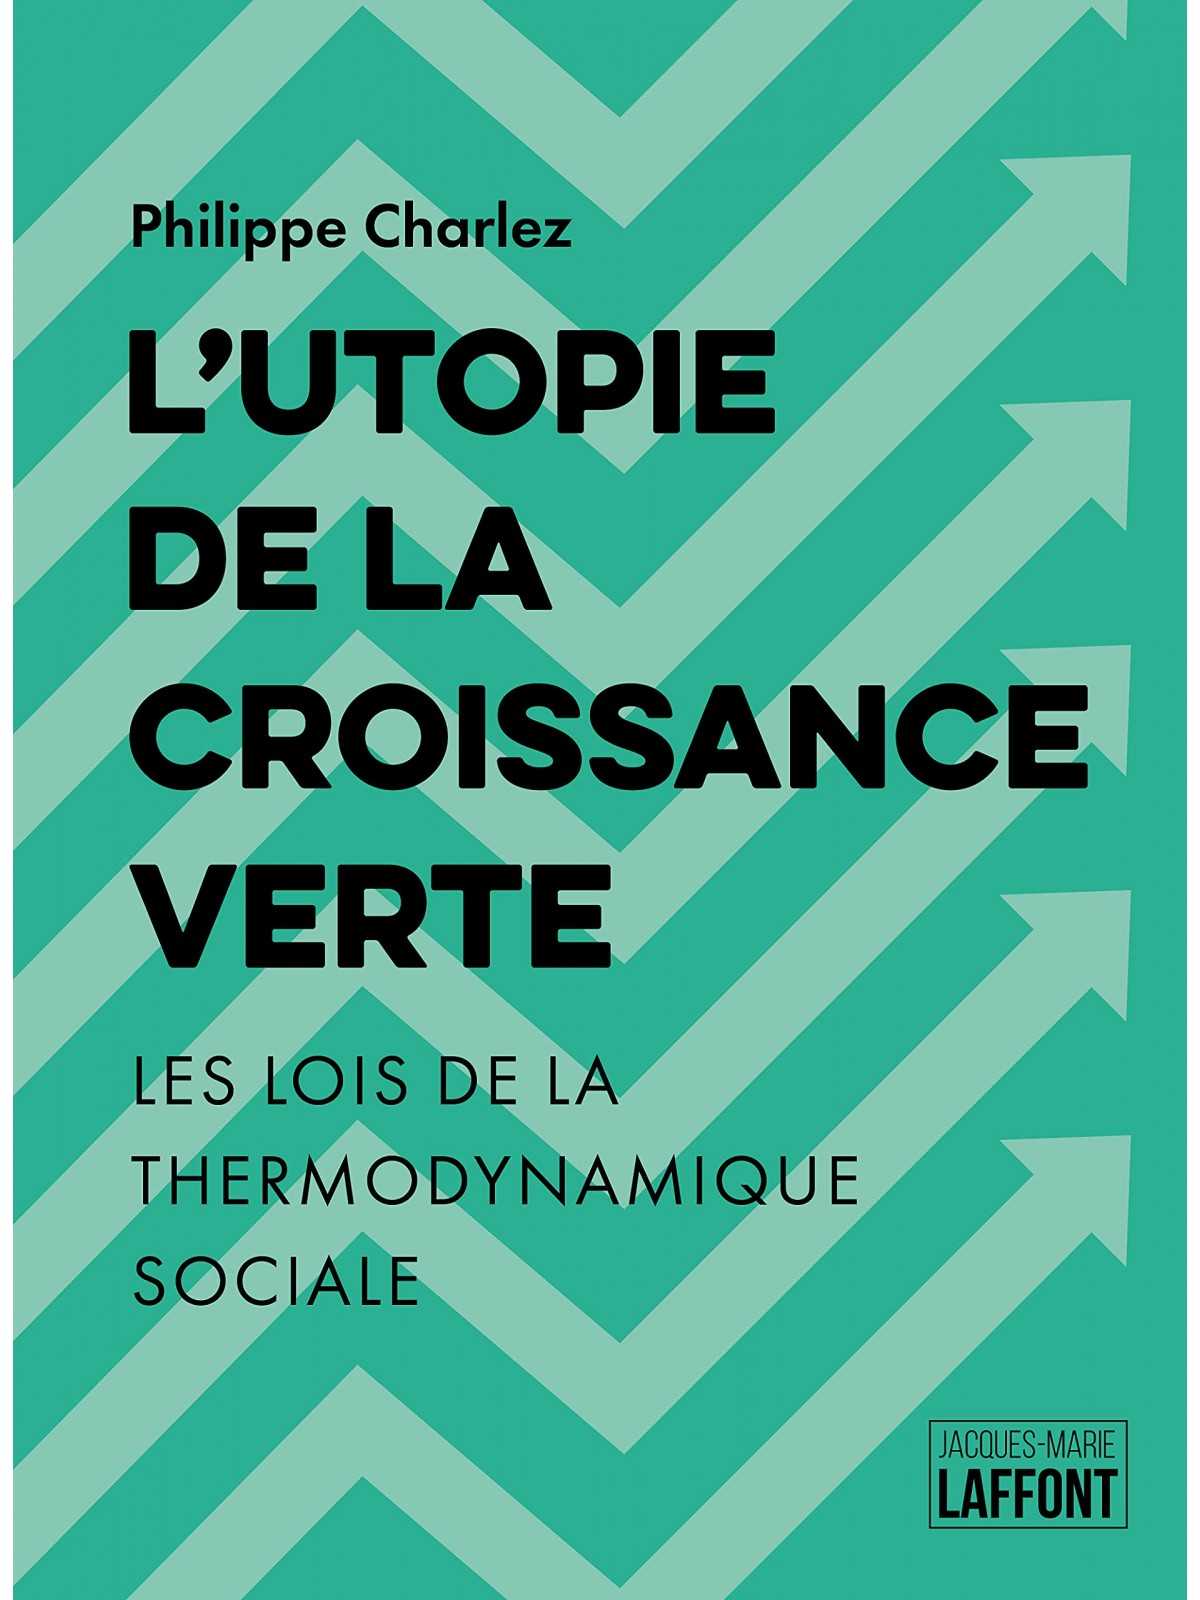 Philippe Charlez : L'Utopie de la croissance verte